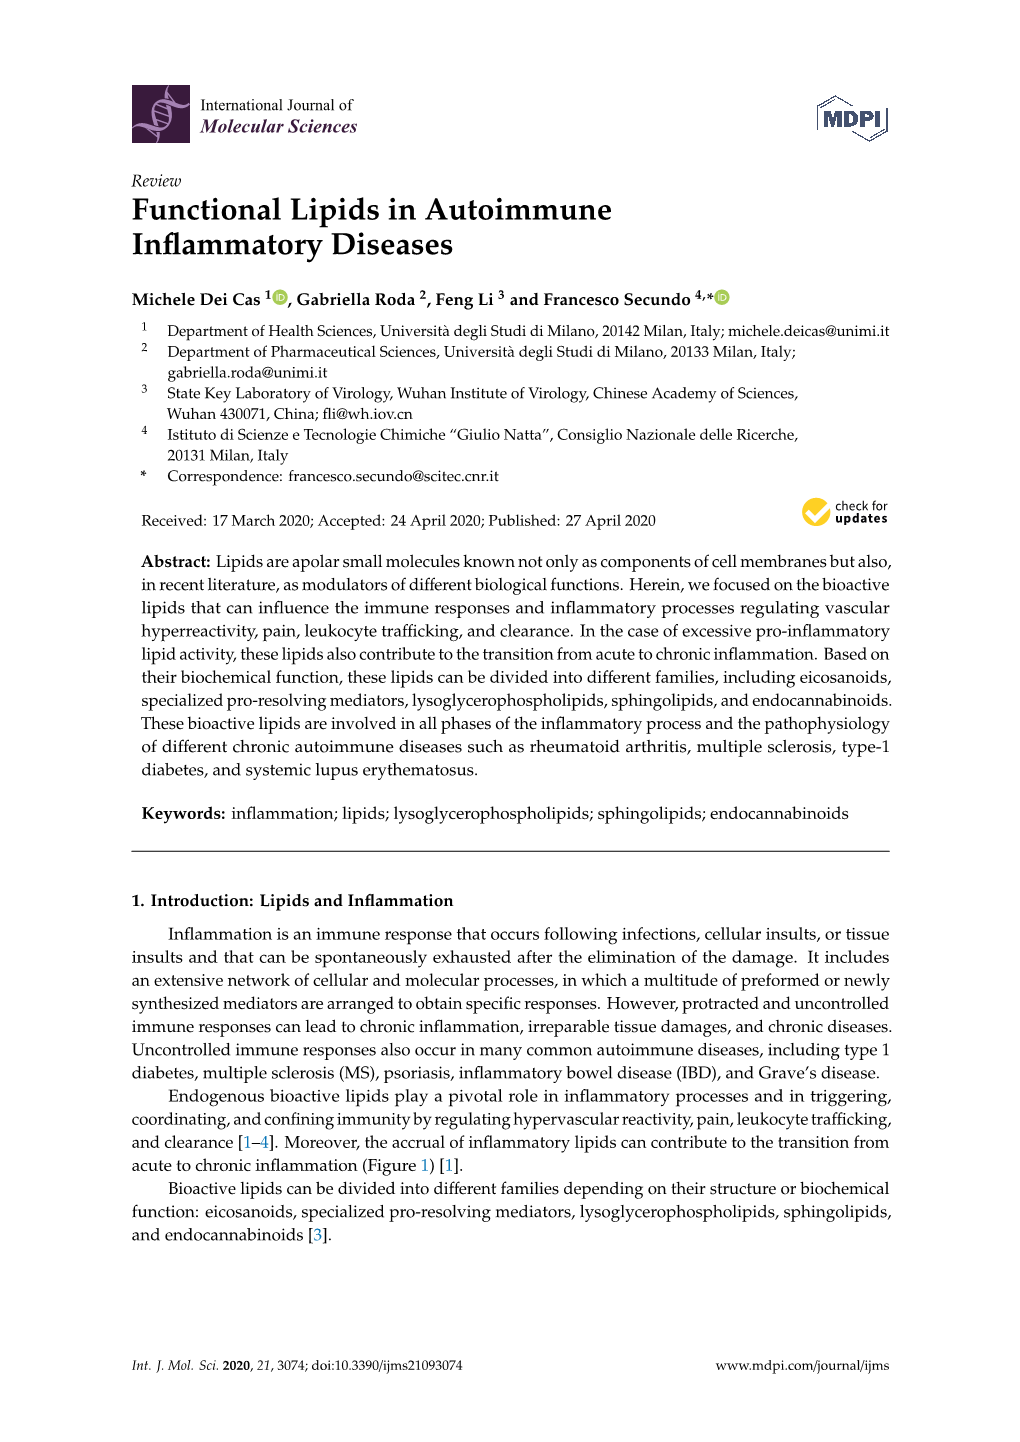 Functional Lipids in Autoimmune Inflammatory